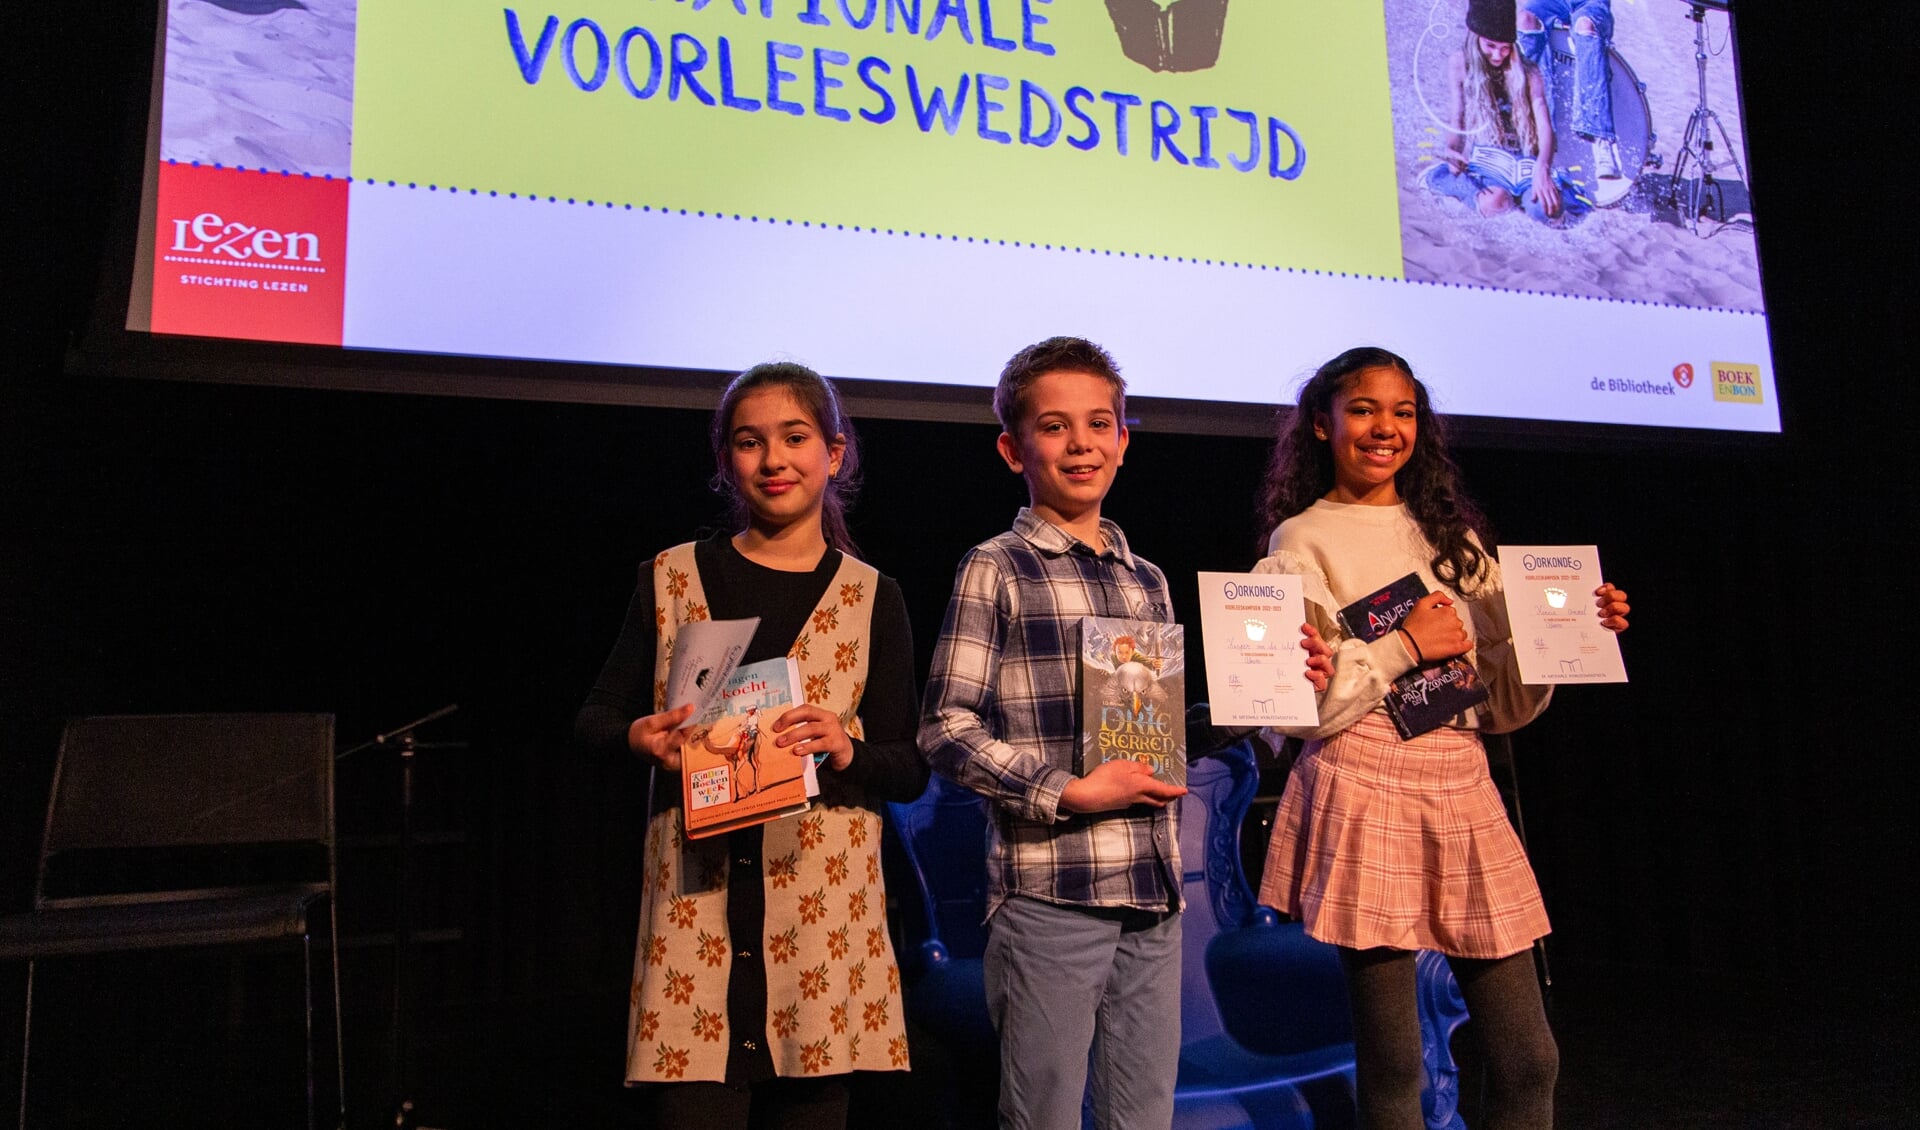 Liyana, Kasper en Kencia winnen de Almeerse voorleeswedstrijd. (Foto: aangeleverd)